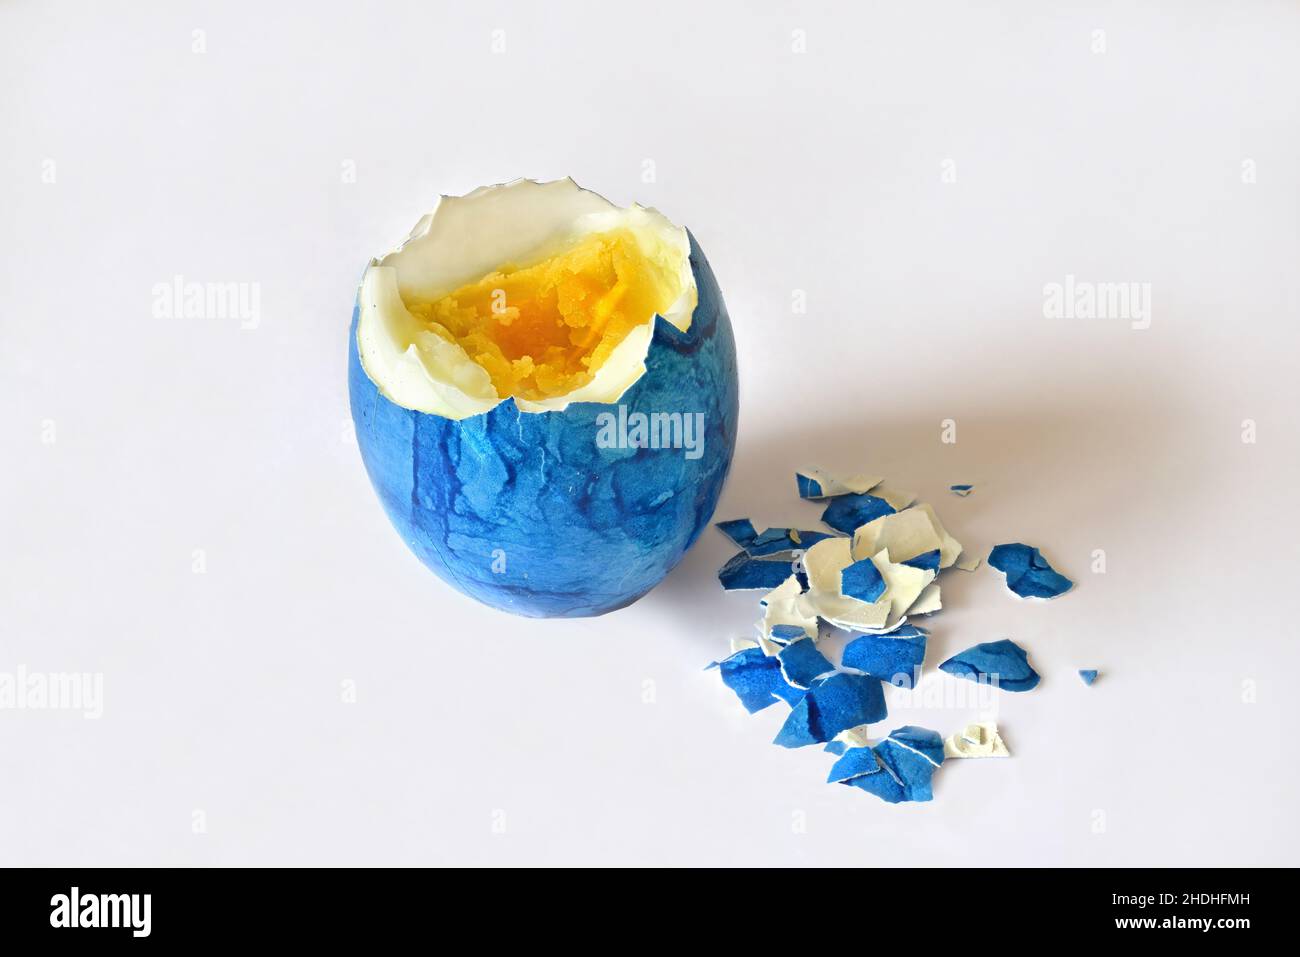 huevo de pascua, huevo duro, huevos de pascua, huevos duros y duros Foto de stock